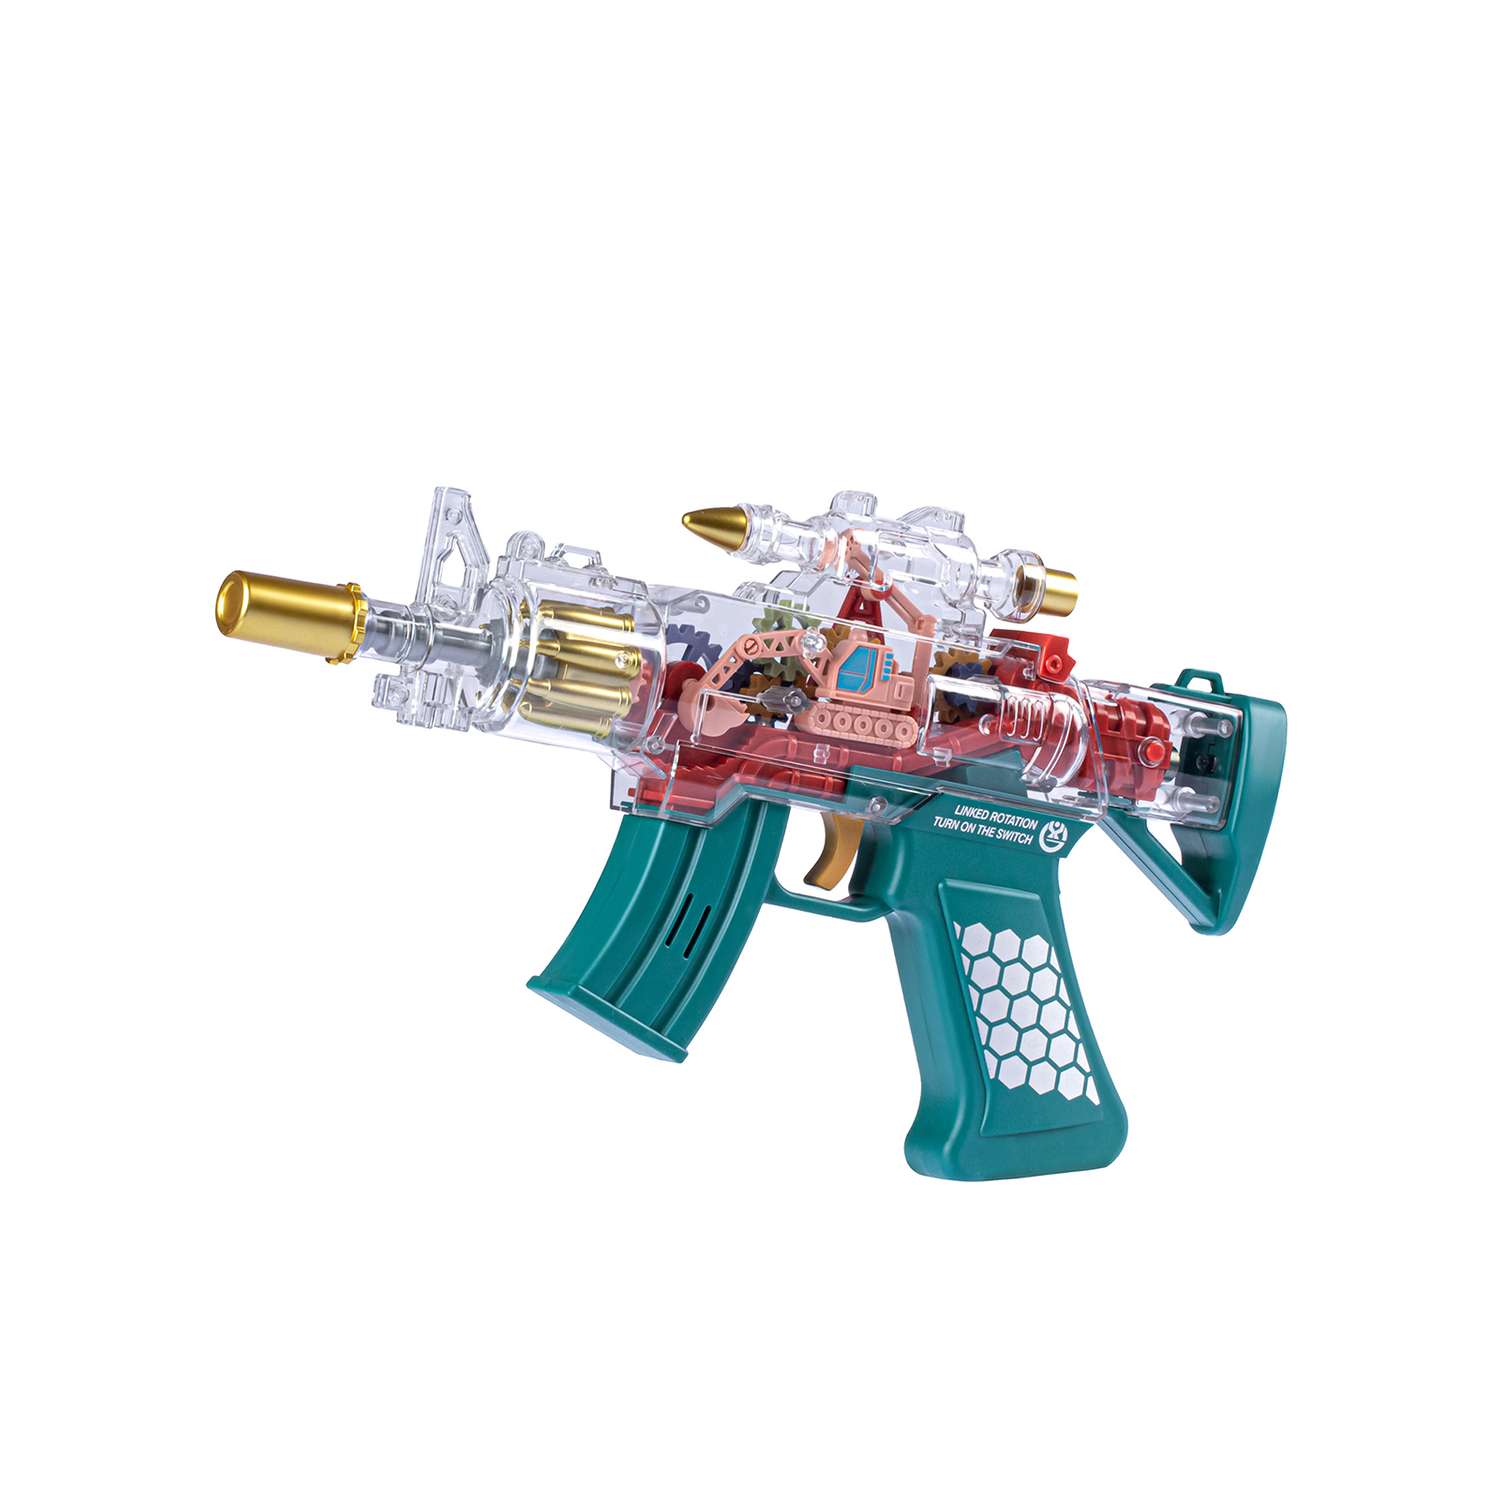 Игрушечное оружие Маленький Воин Автомат на батарейках Свет Звук Подвижные детали Цвет бирюзовый - фото 3